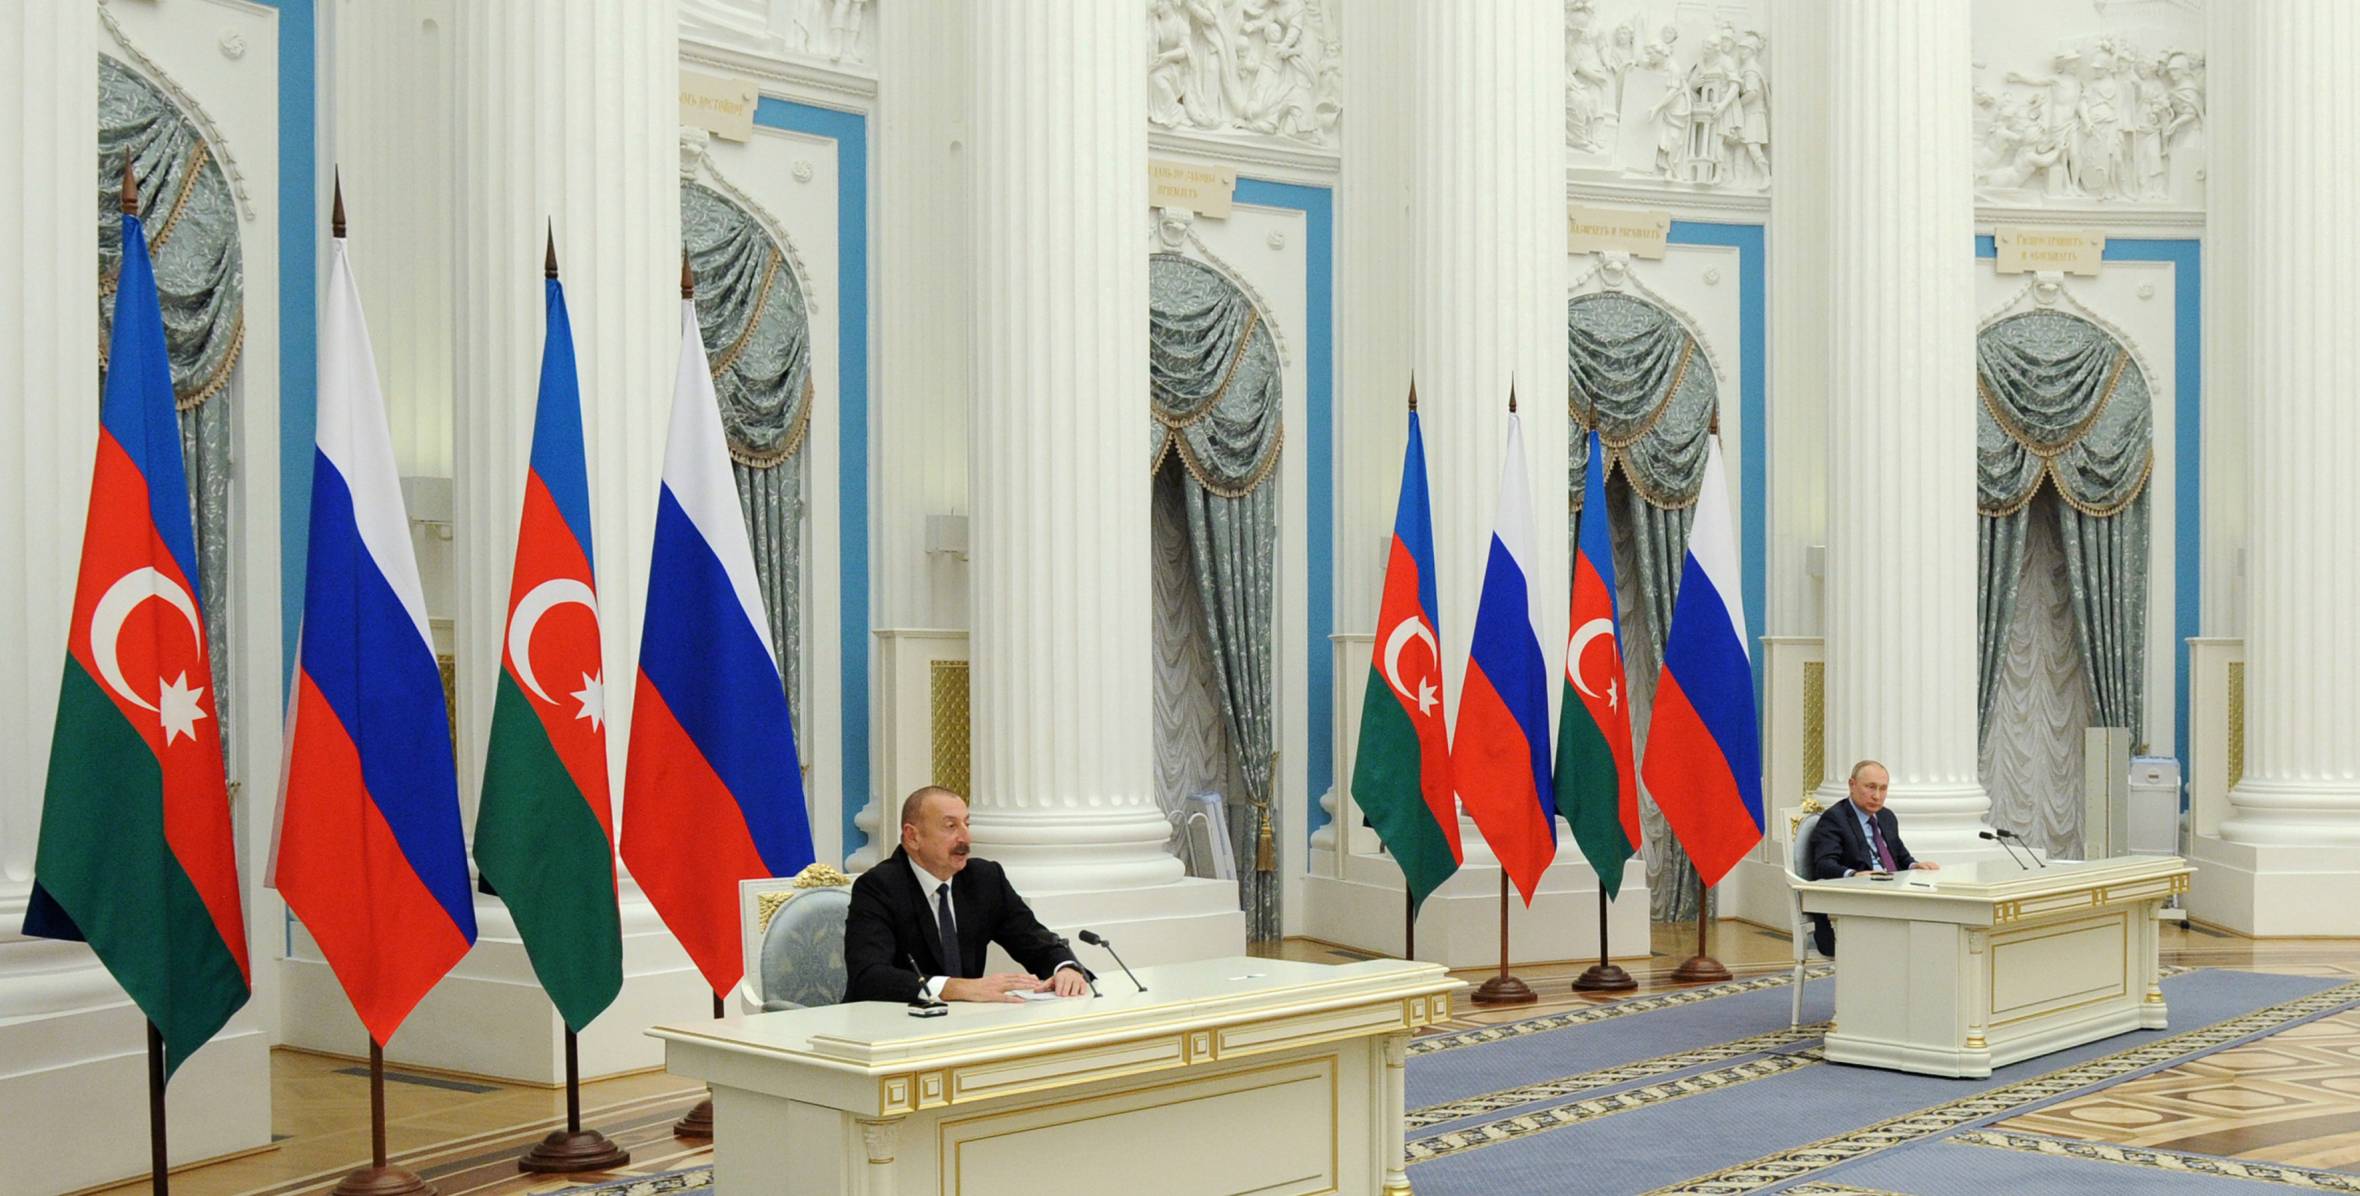 Ильхам Алиев и Президент Владимир Путин выступили с заявлениями для печати